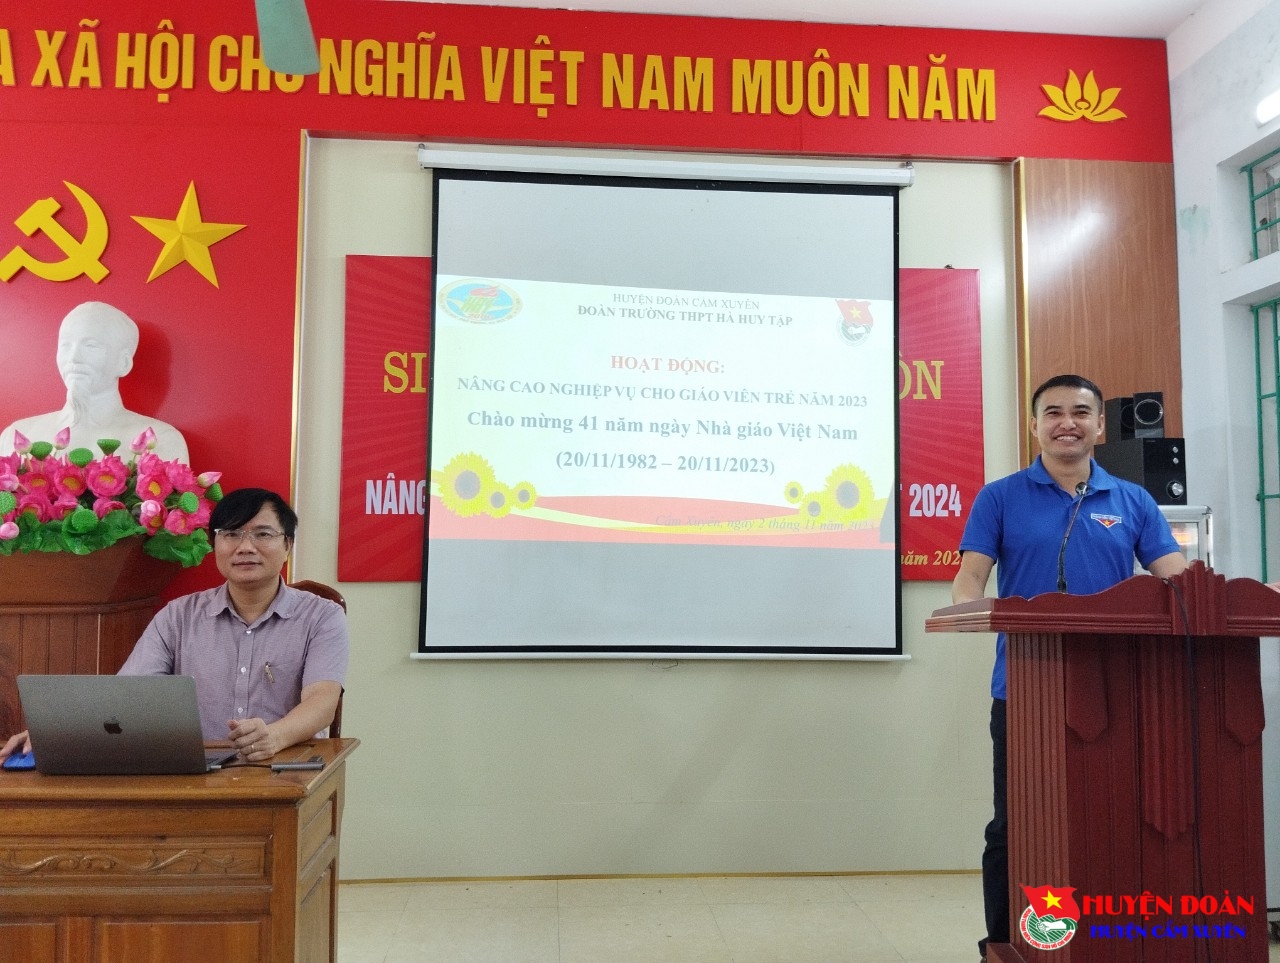 Trường THPT Hà Huy Tập tổ  Tọa đàm nghiệp vụ giáo viên trẻ năm học 2023 - 2024